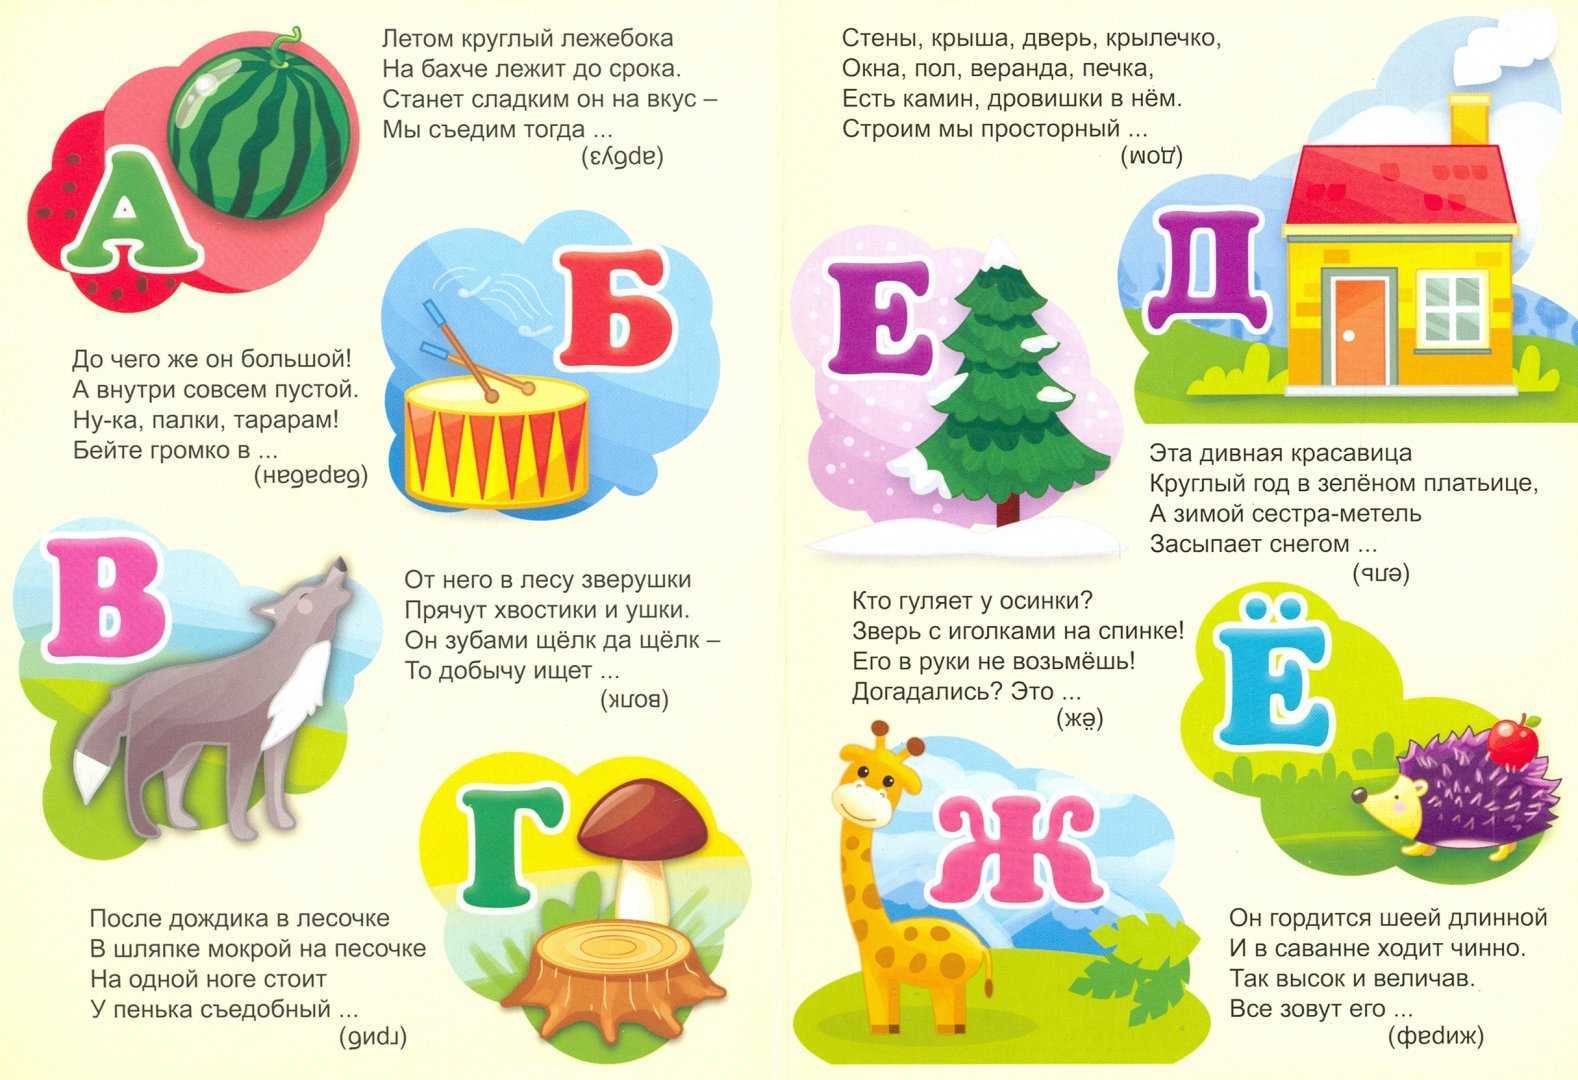 Загадки про русский язык с ответами – школьная программа – ladyvi.ru